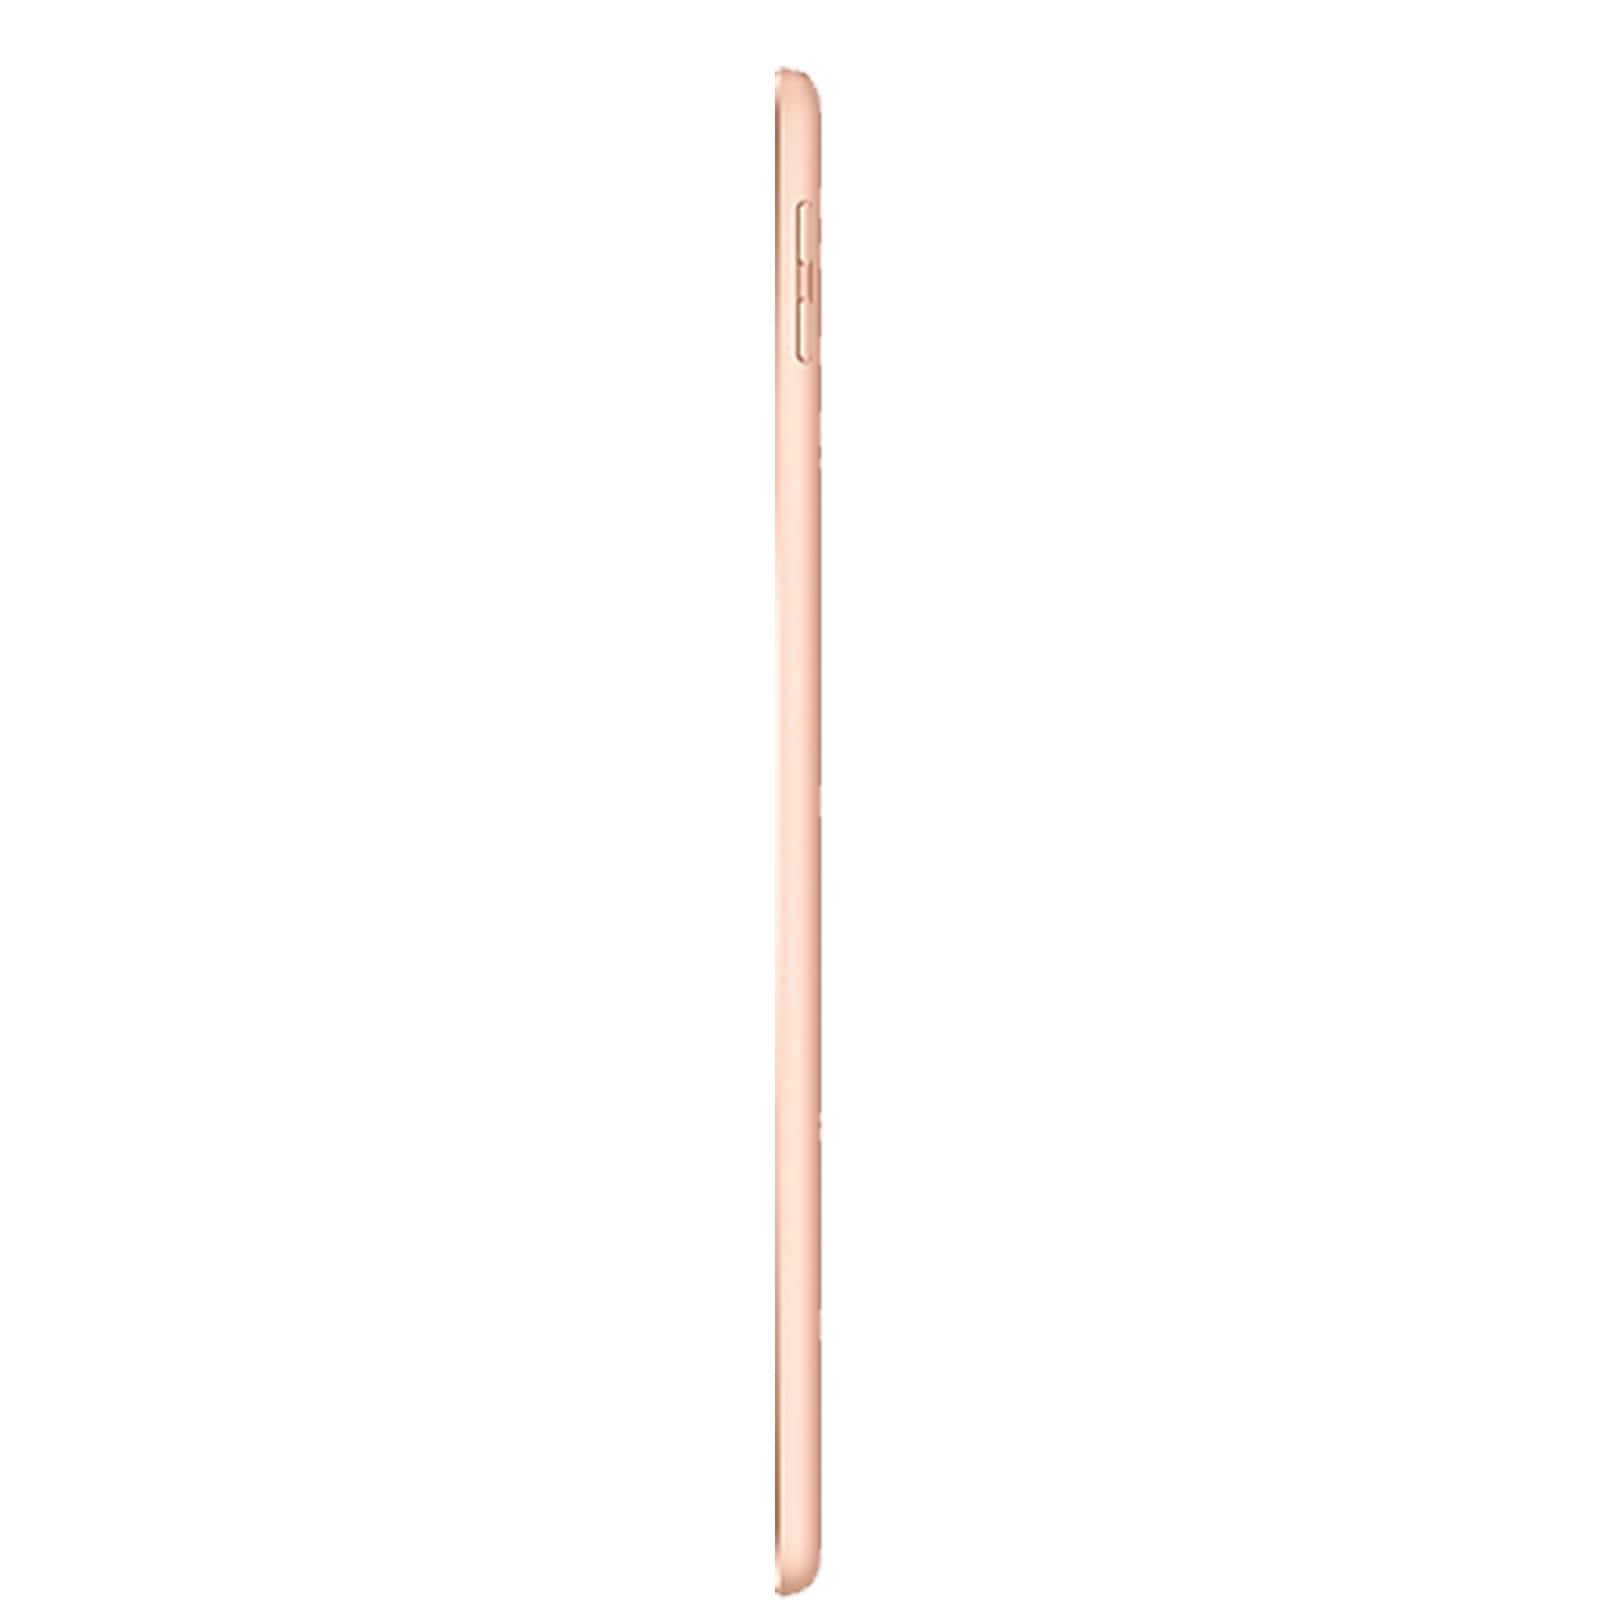 Apple iPad 6 32GB WiFi Gold - Good